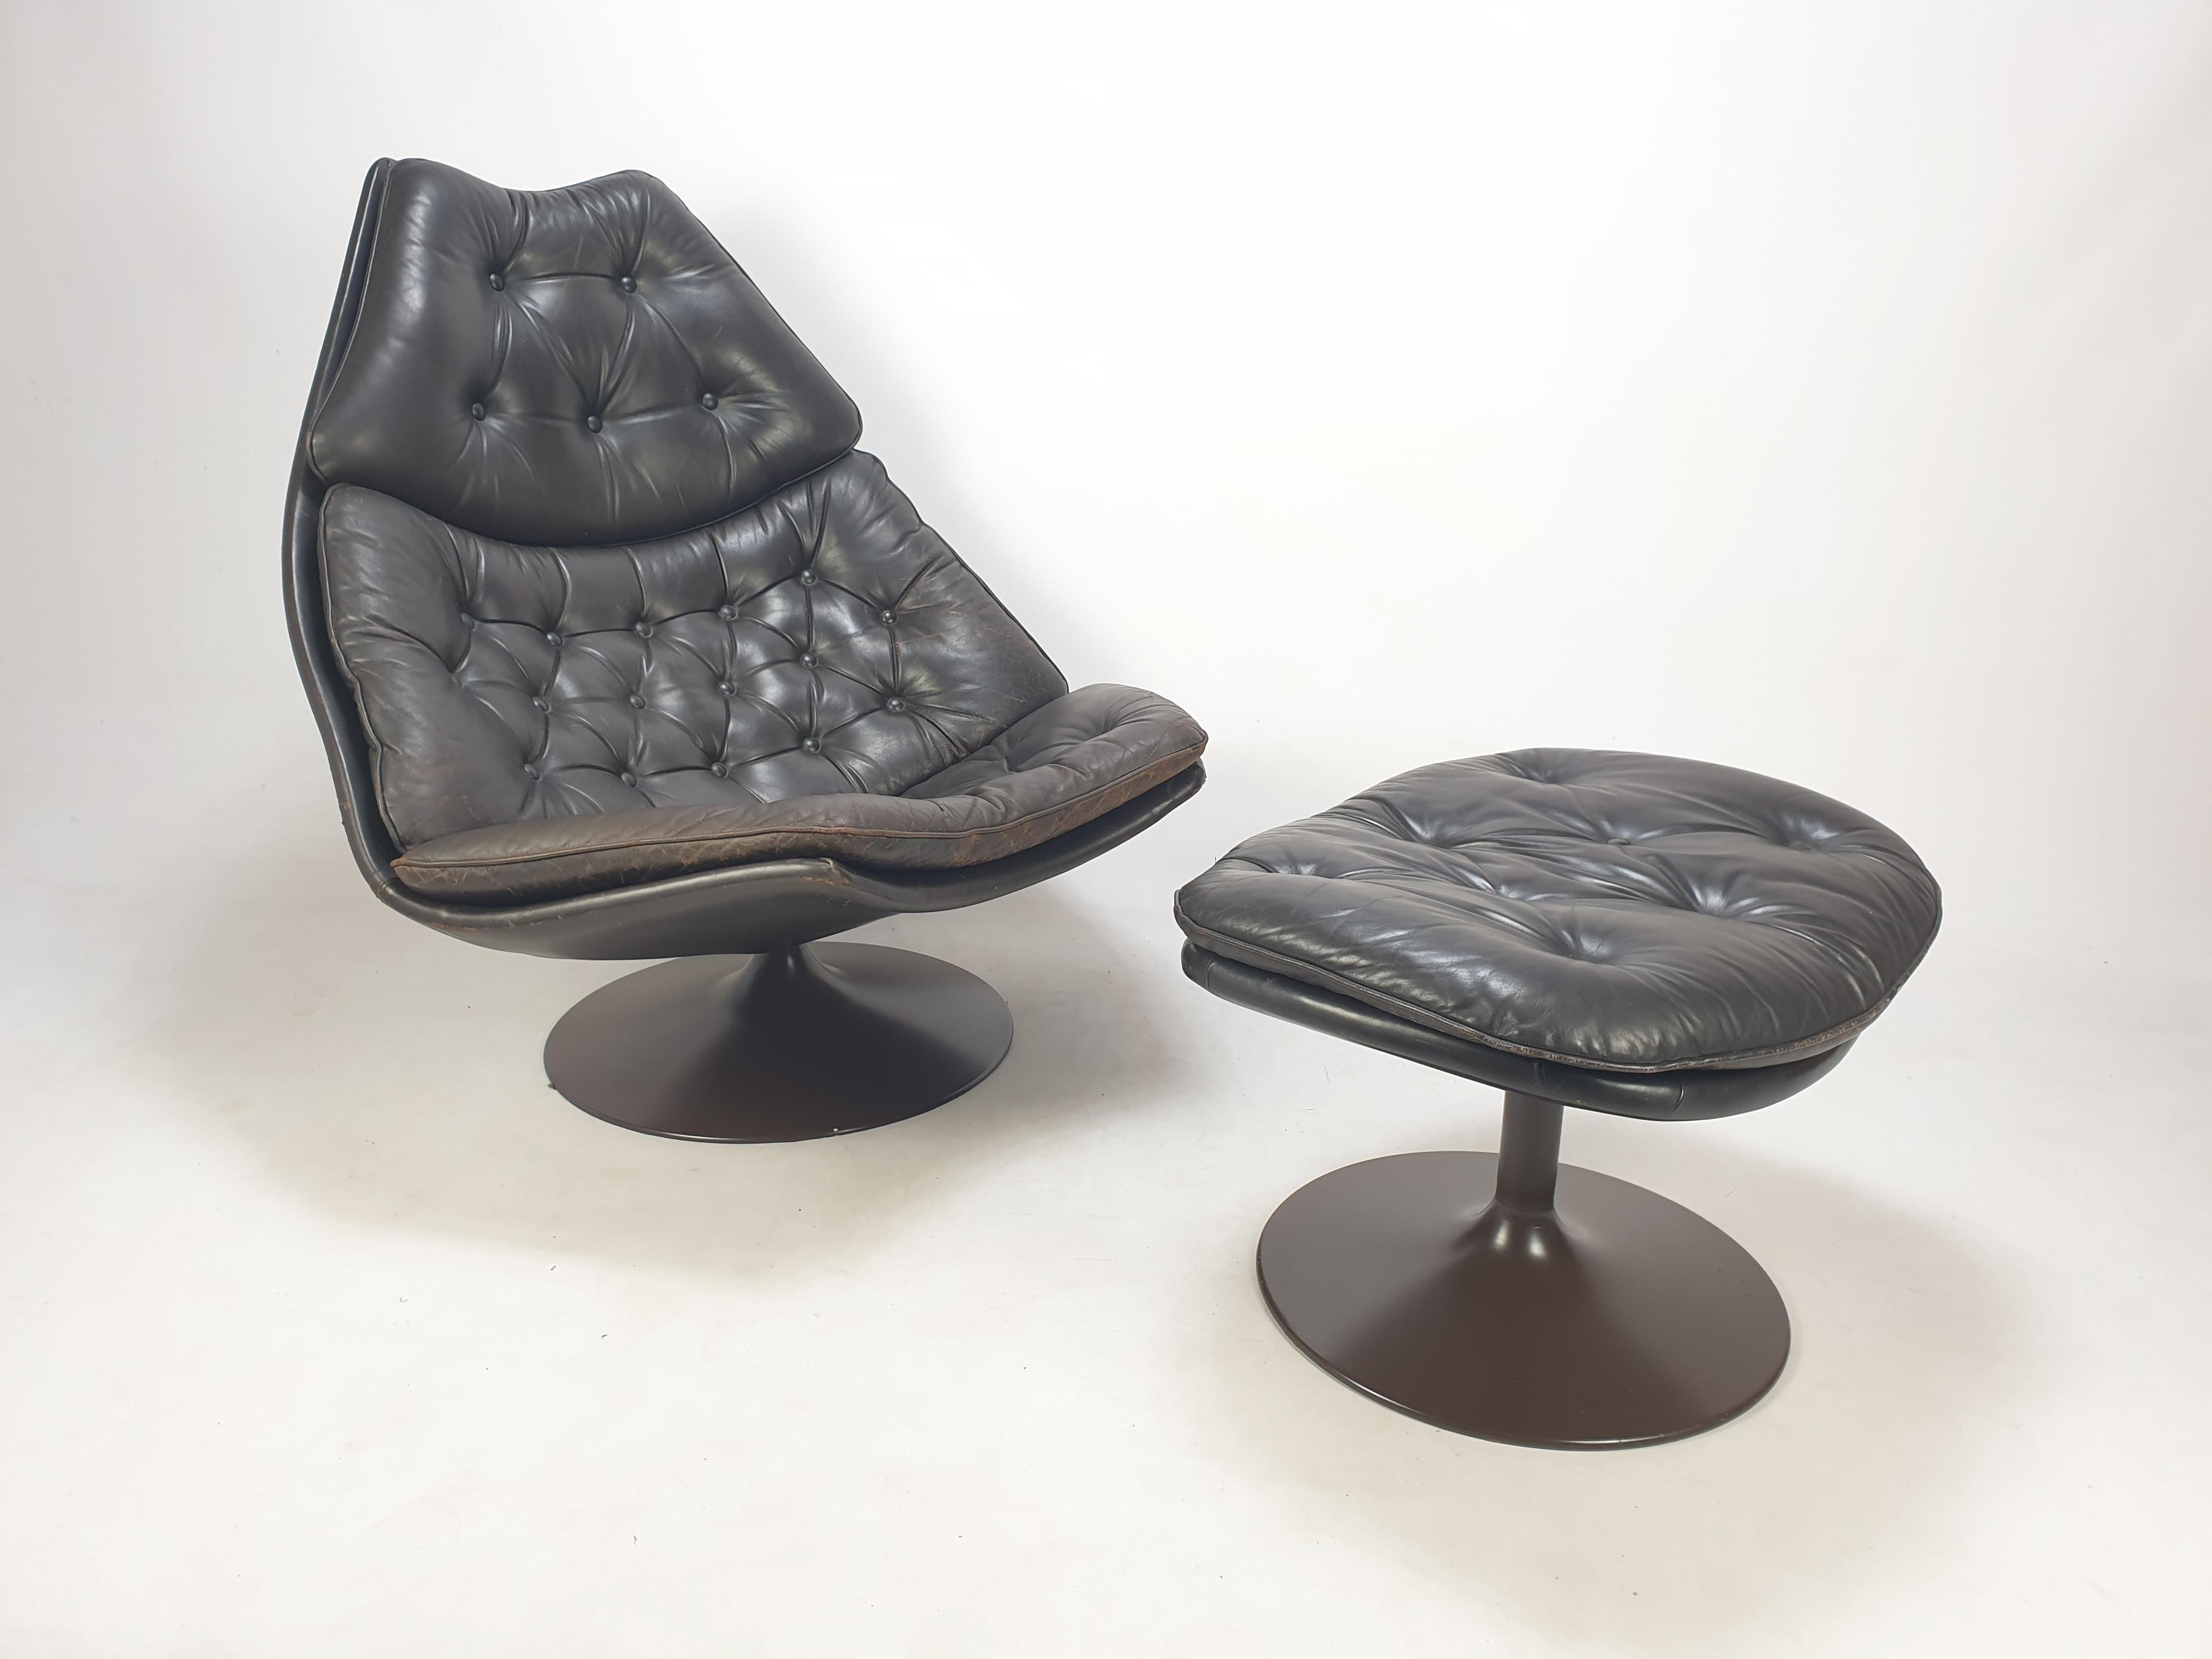 Chaise longue Artifort très confortable du milieu du siècle, modèle F588, avec Ottoman.

Cet ensemble a été conçu par le célèbre designer anglais Geoffrey Harcourt dans les années 60. 

Il a le cuir d'origine avec les traces d'utilisation